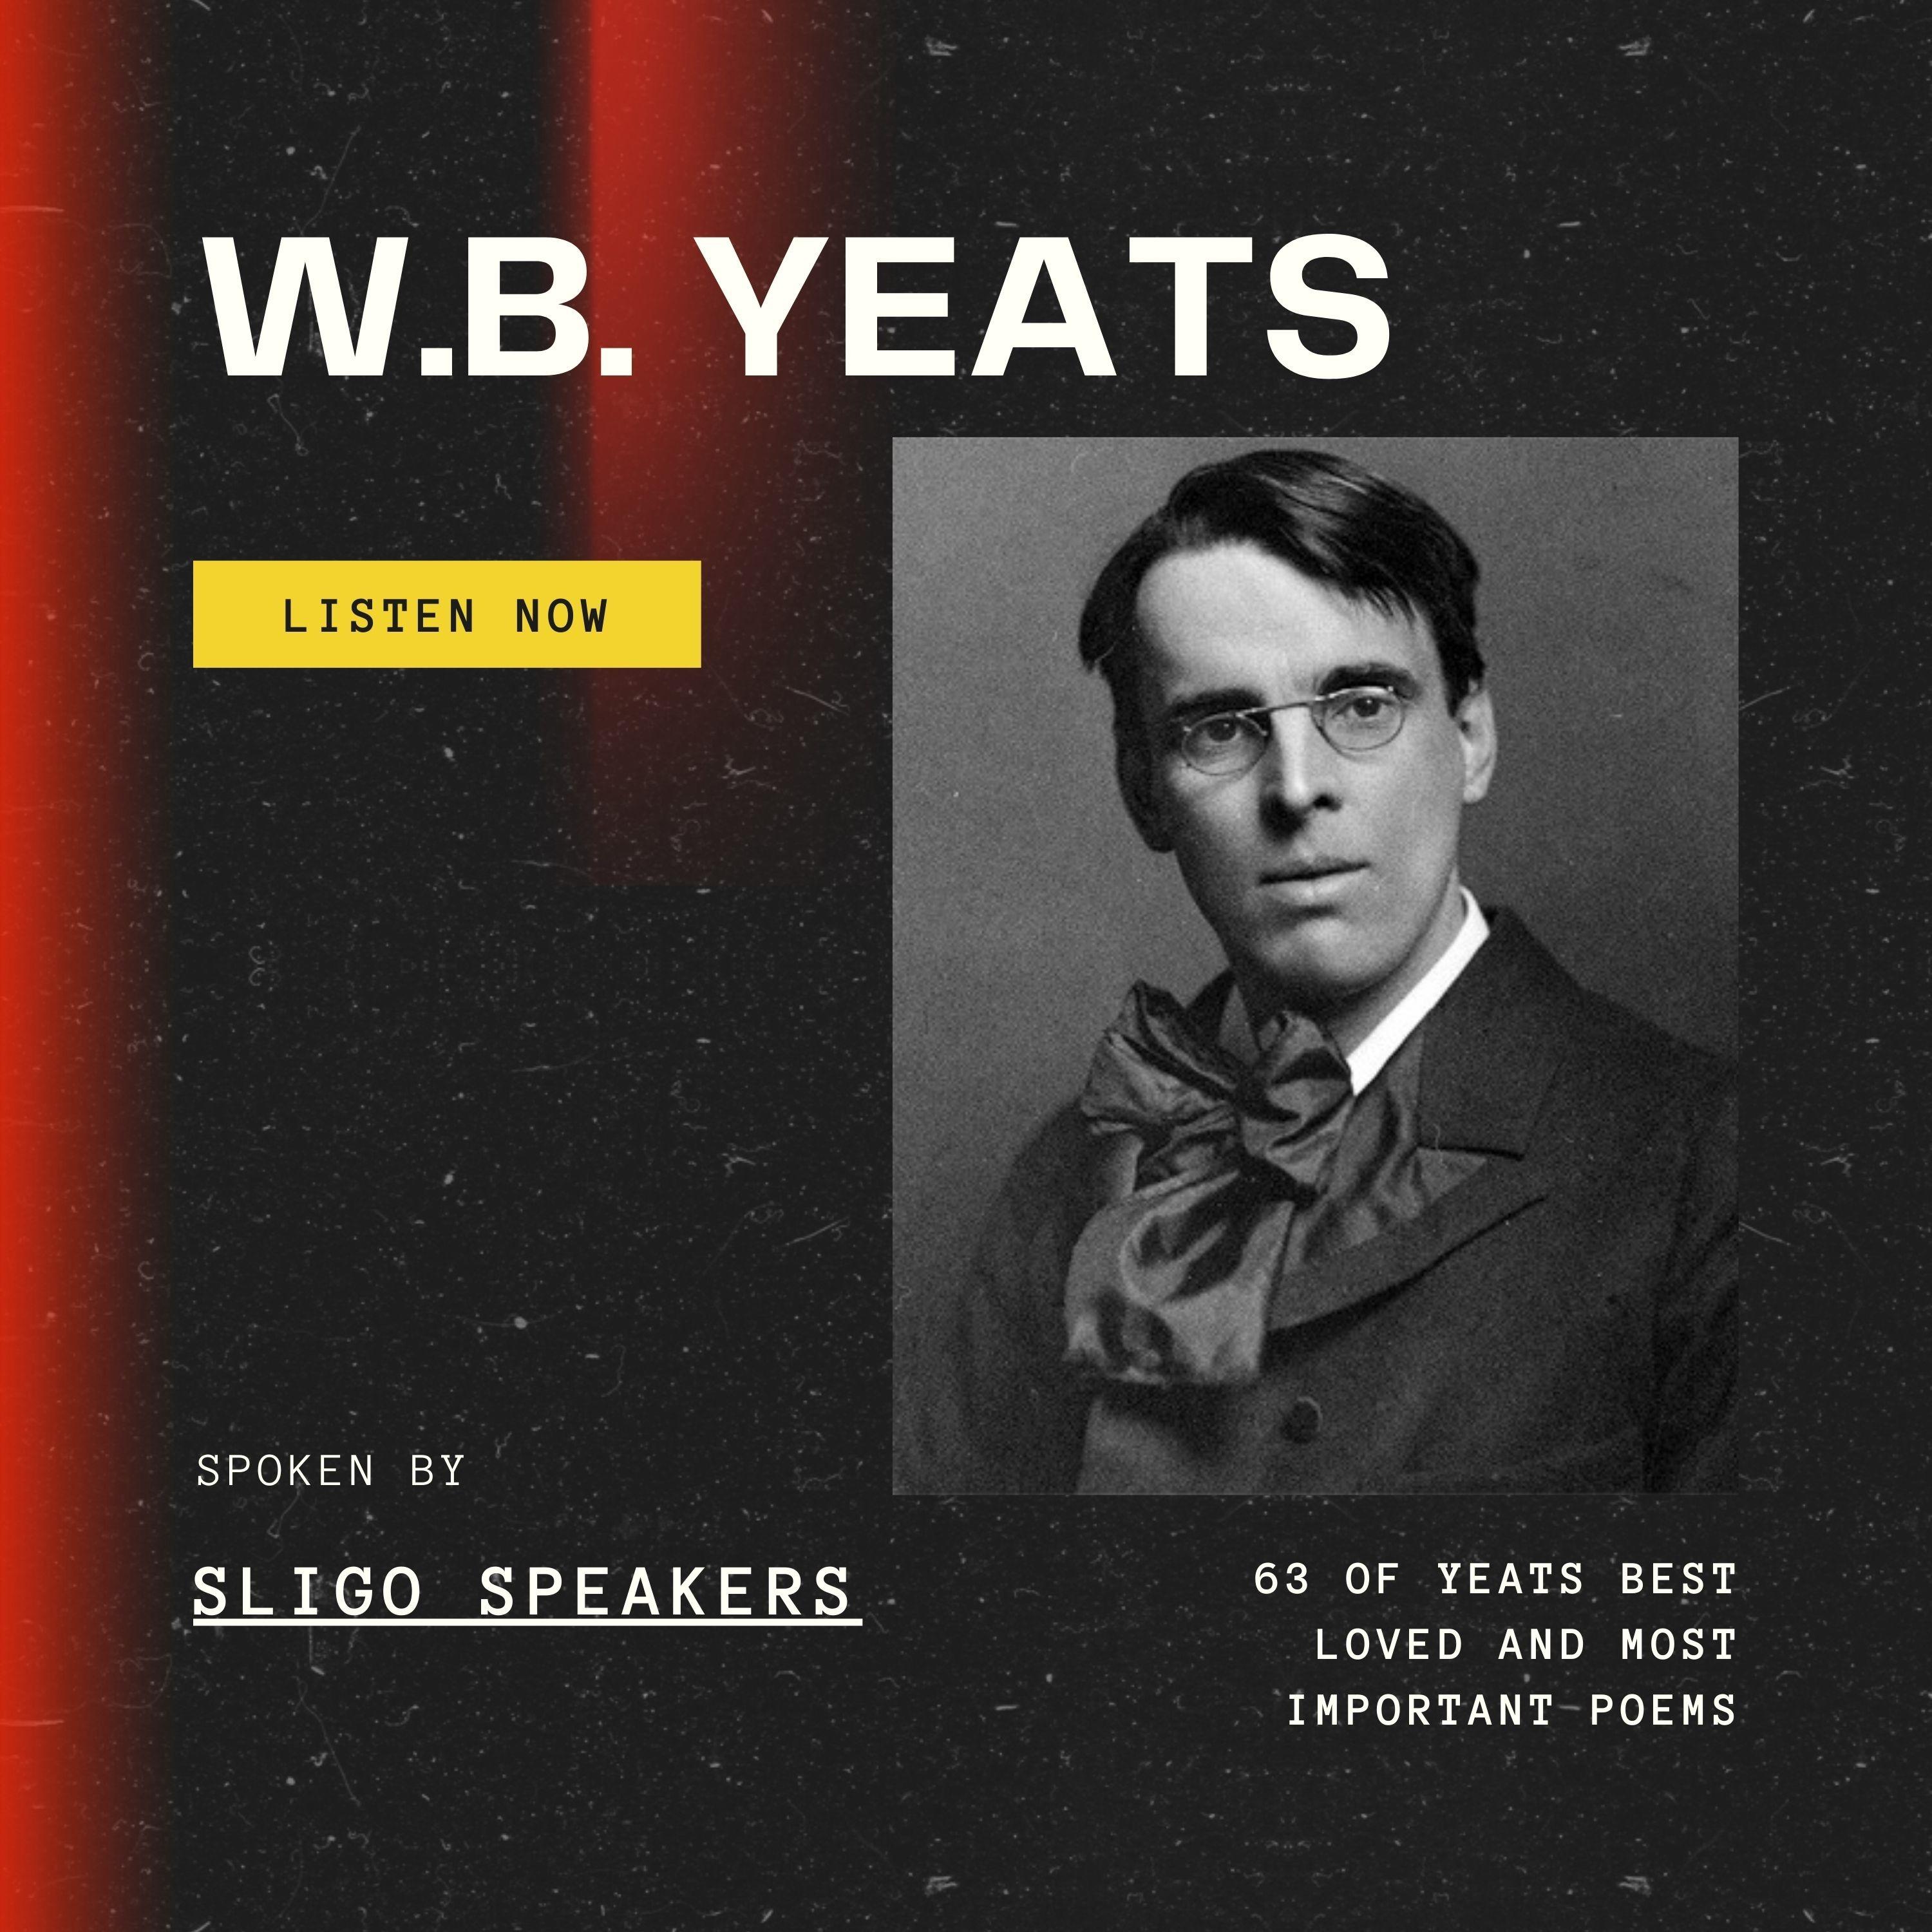 W.B. Yeats Spoken by trhe Sligo Speakers